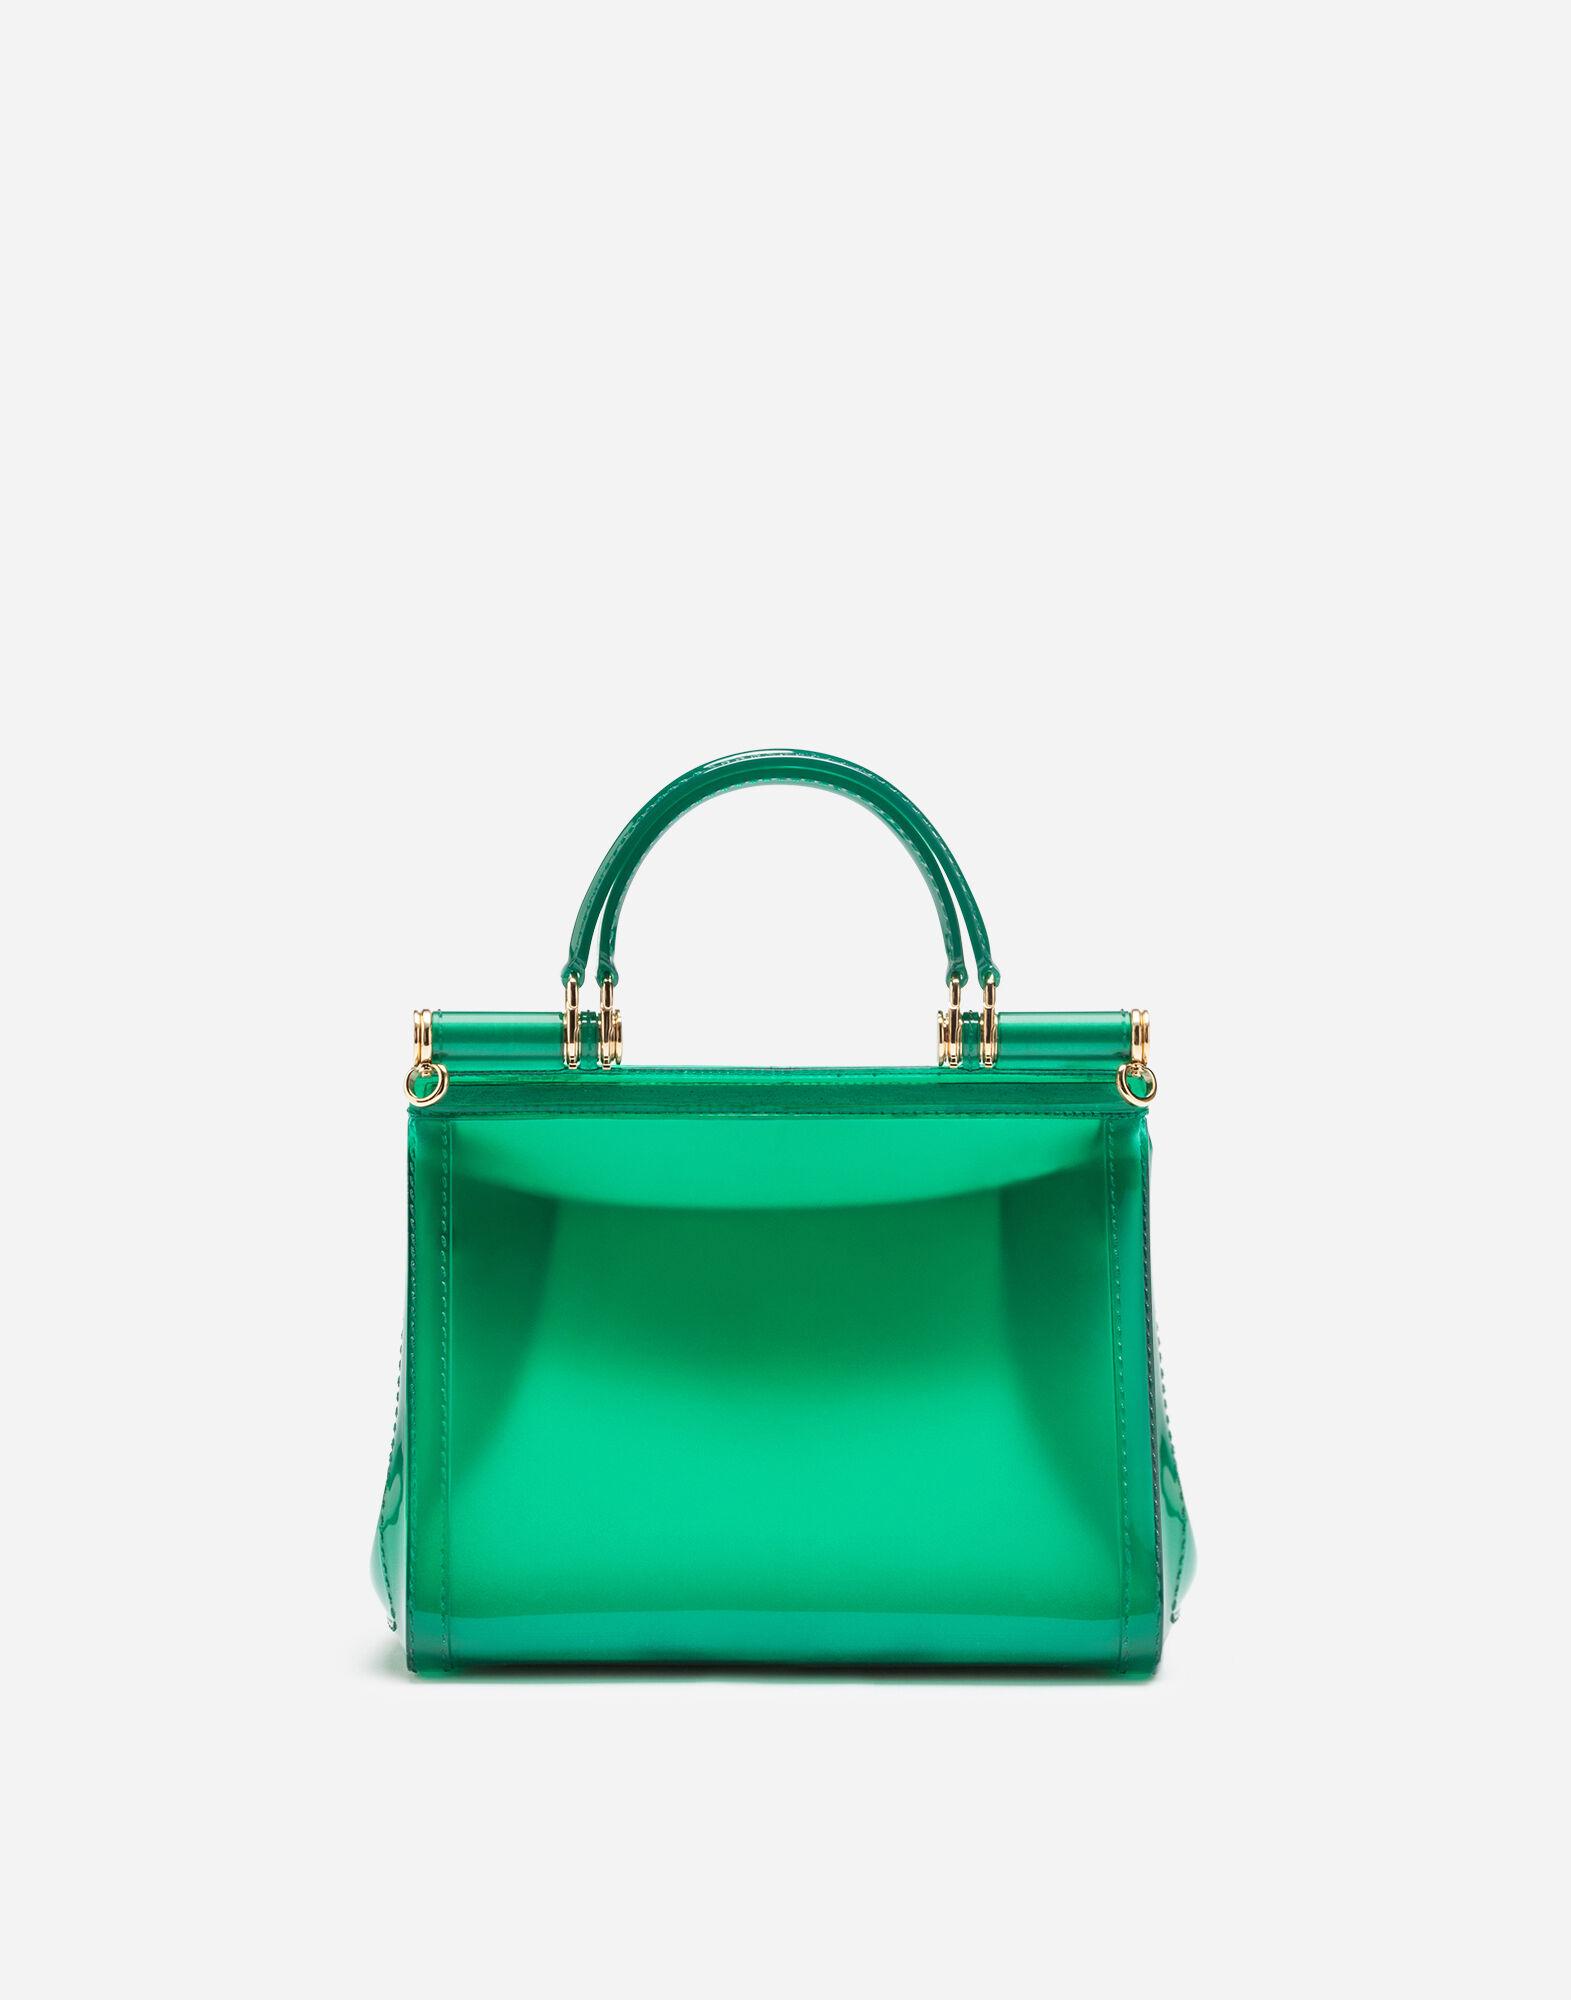 Dolce & Gabbana Mini Sicily Bag - Green